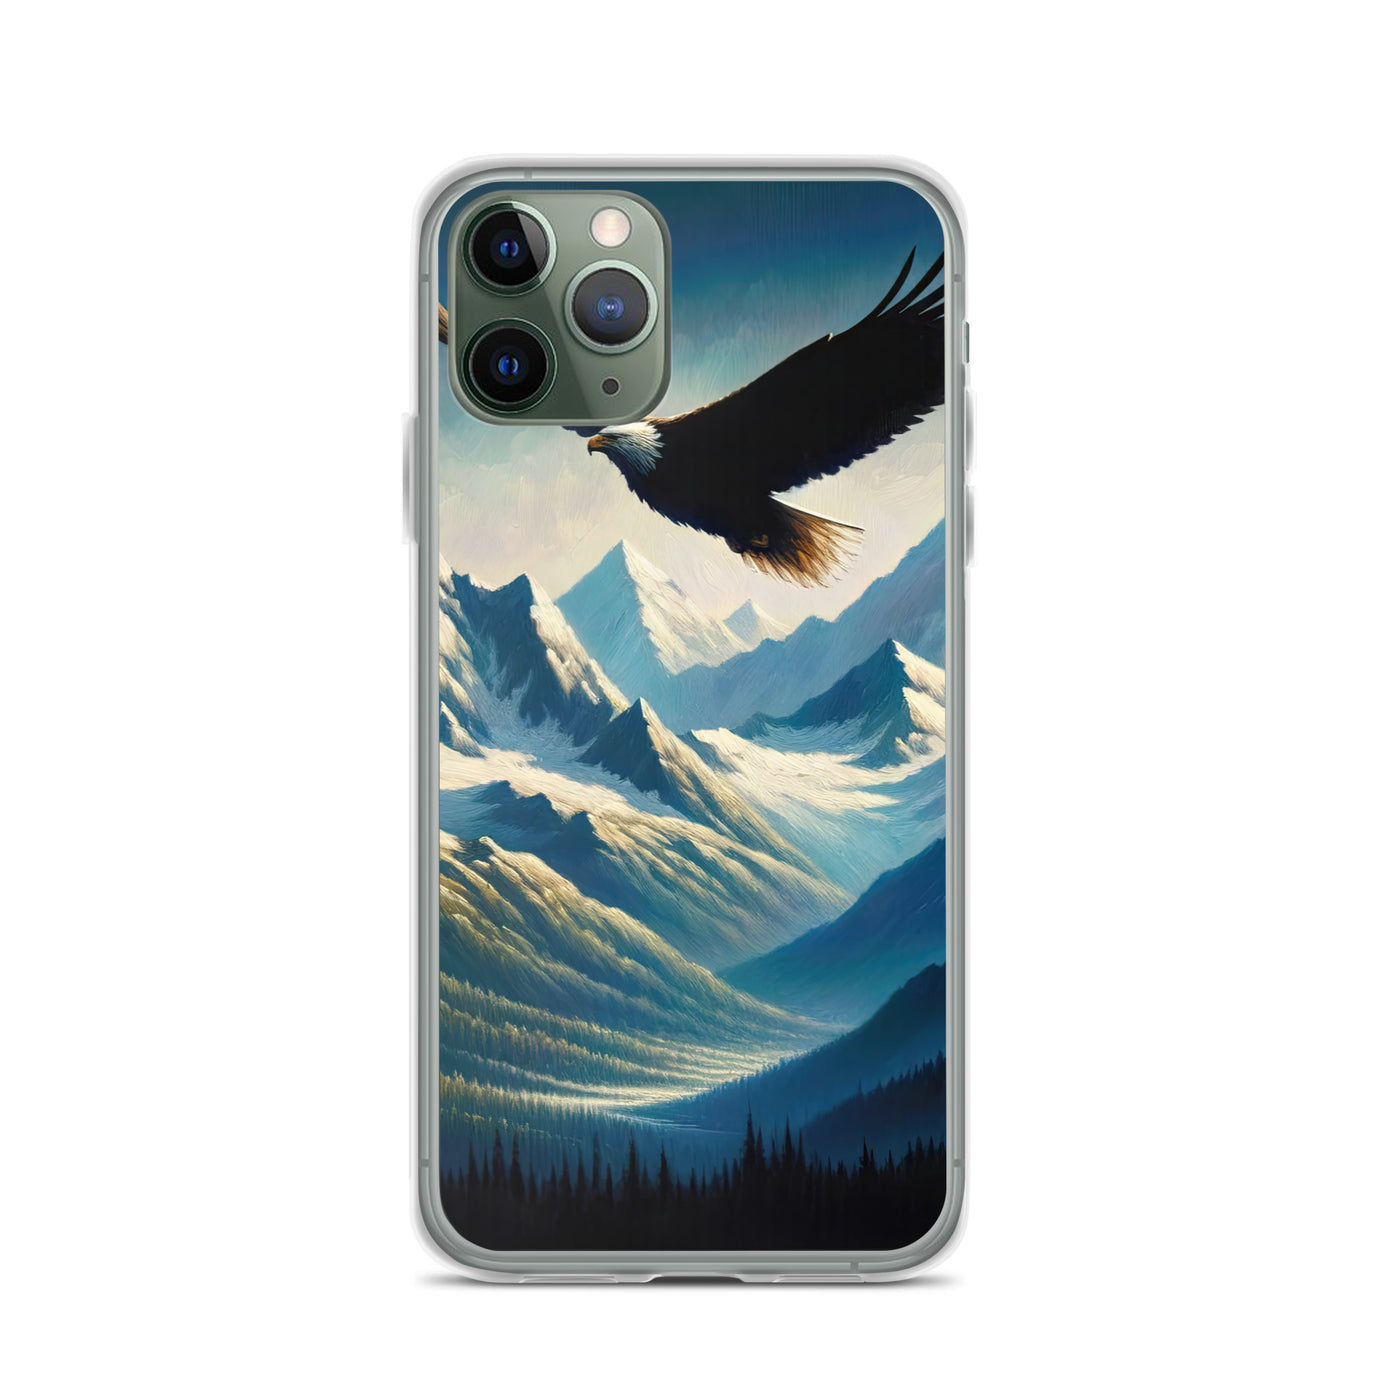 Ölgemälde eines Adlers vor schneebedeckten Bergsilhouetten - iPhone Schutzhülle (durchsichtig) berge xxx yyy zzz iPhone 11 Pro